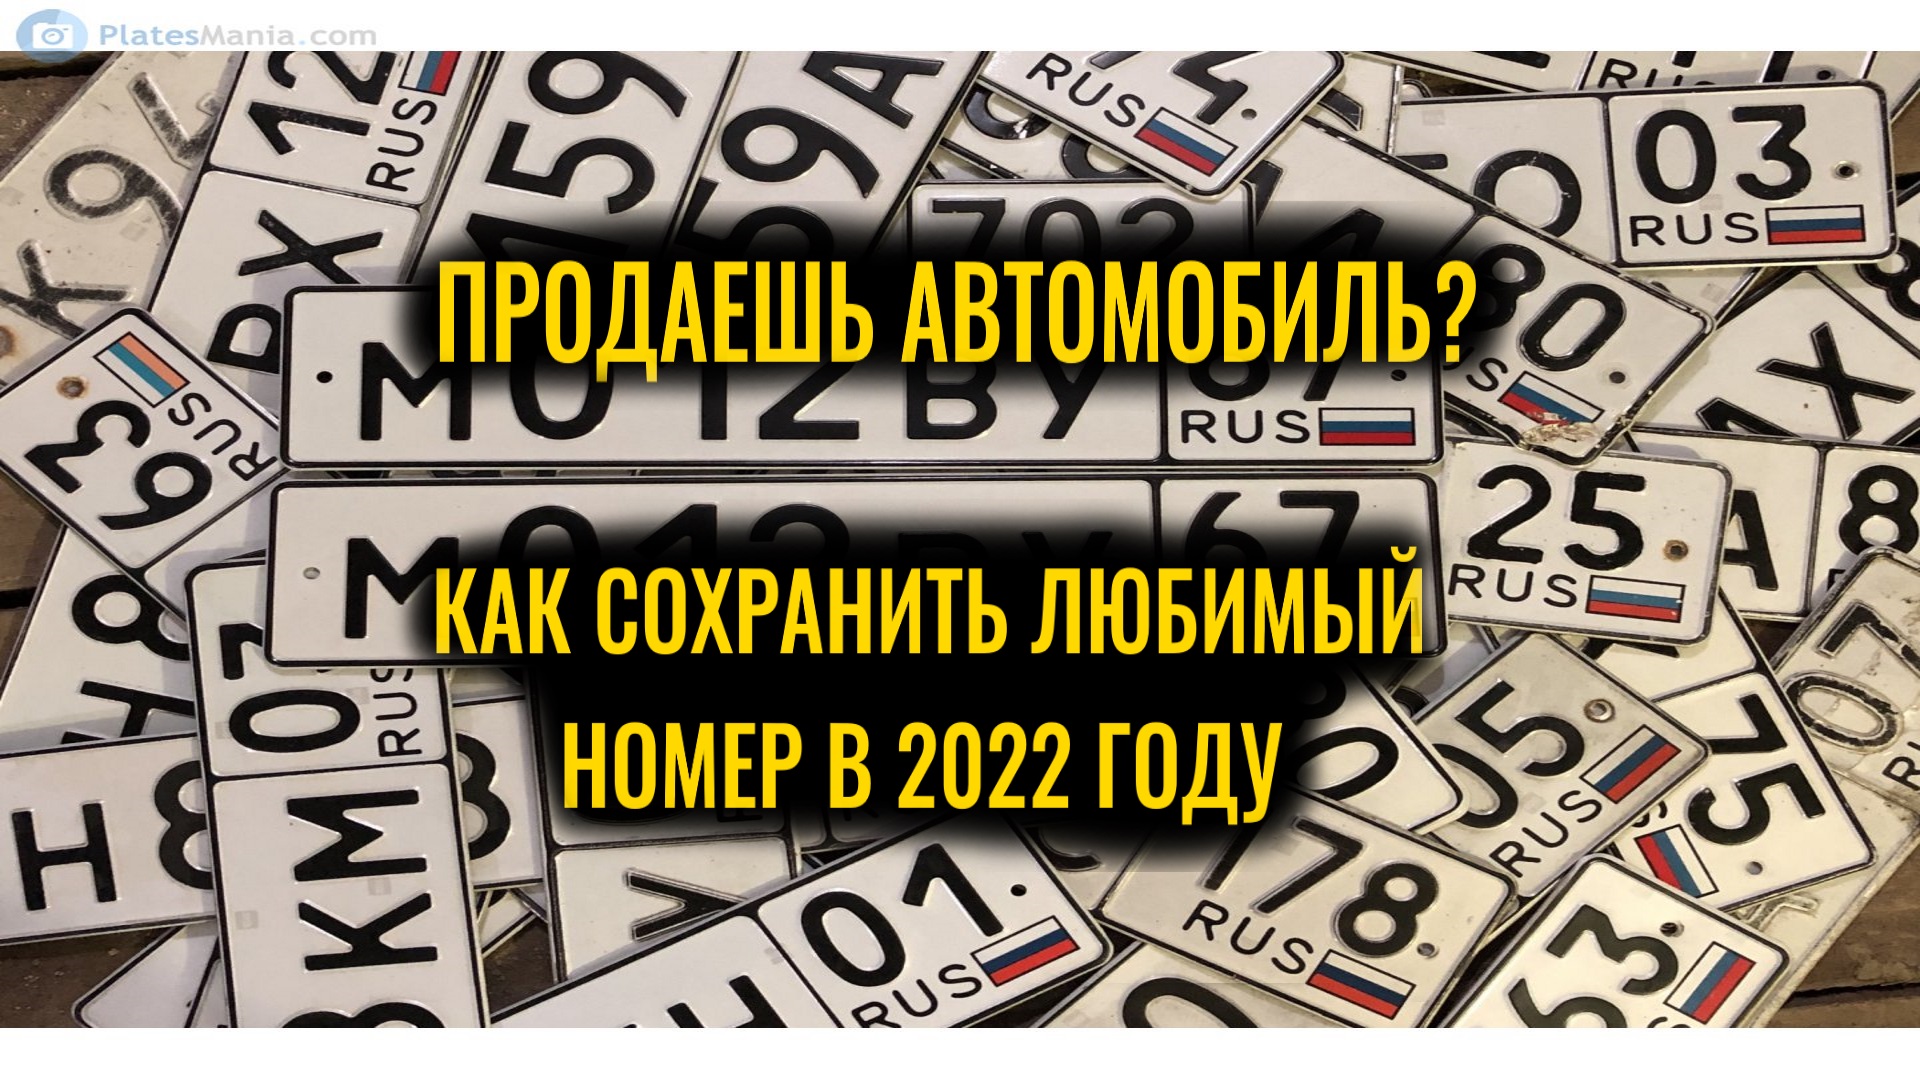 Как сохранить гос продаже. Номера машин 2022 года. Оставить себе госномер при продаже. Цены на номера автомобиля 2022 год. Автомобильные номера Таджикистана как выглядят 2022.